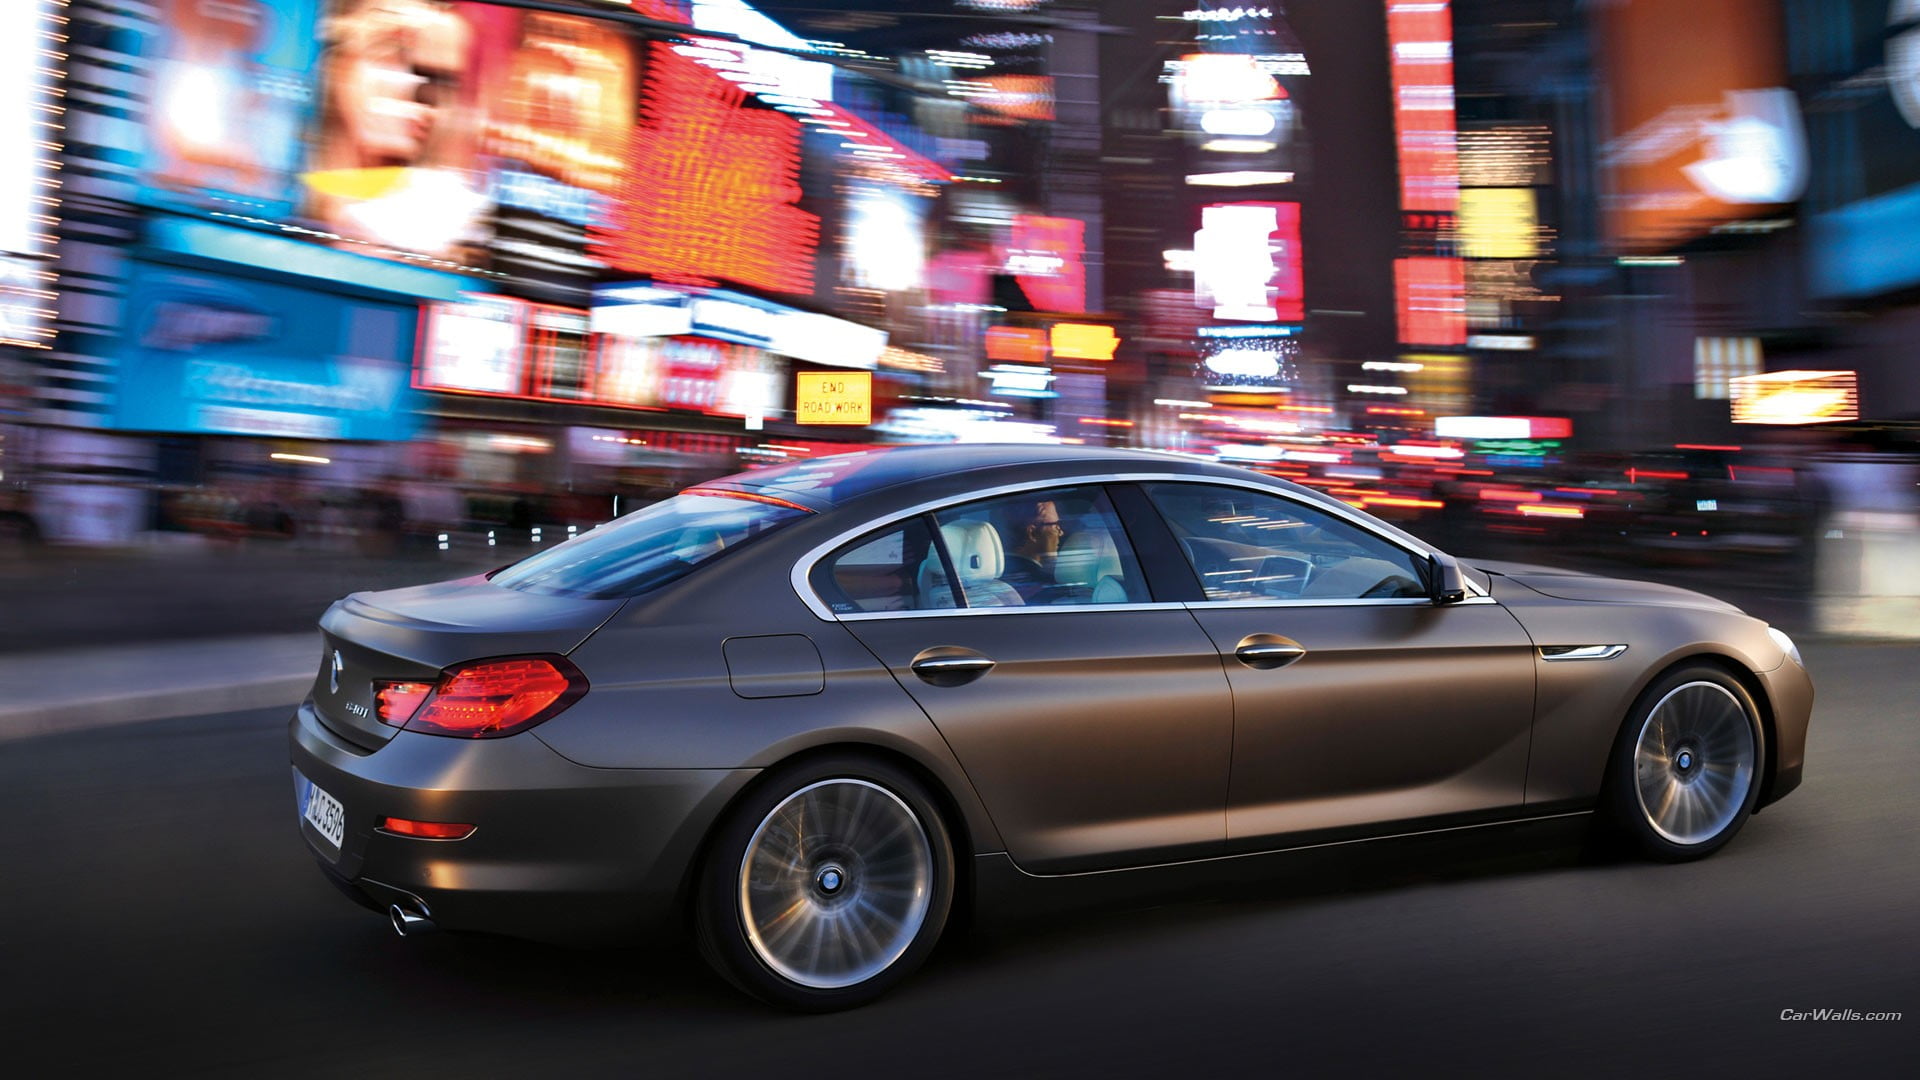 gray 5-door hatchback, BMW 6, city, car, vehicle, motor vehicle